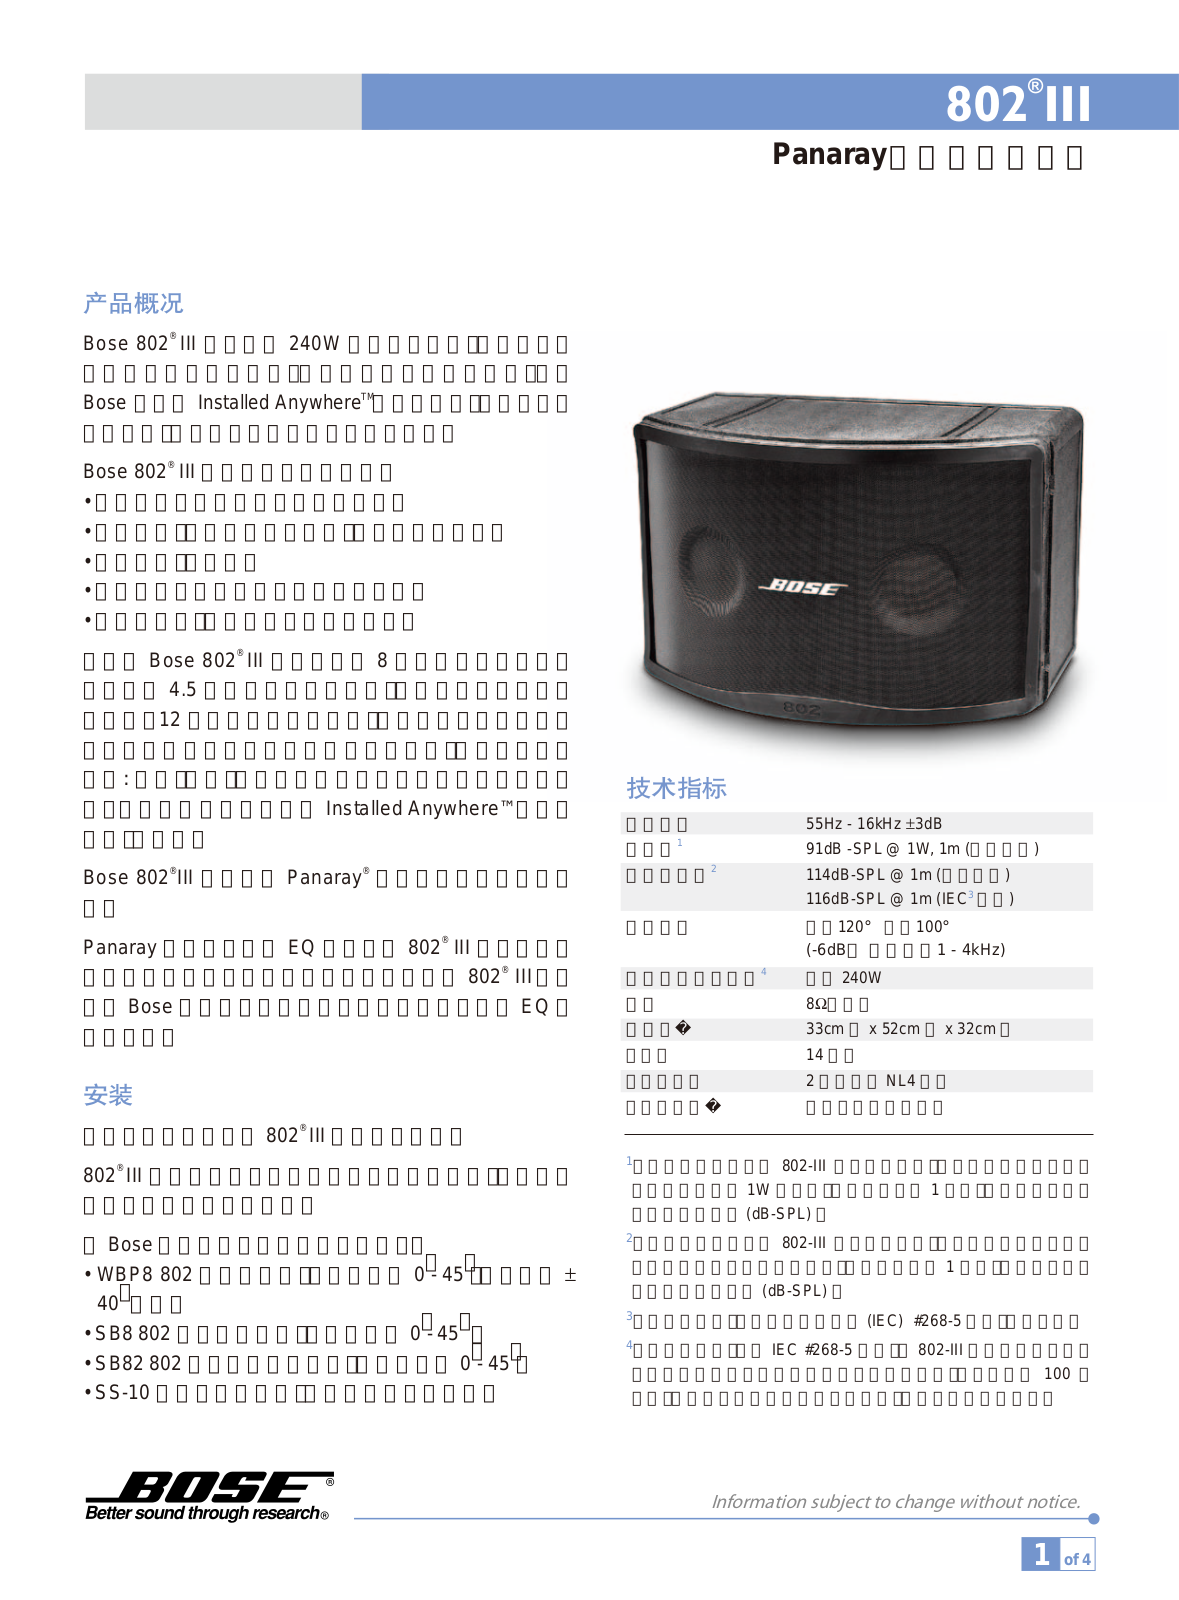 Bose 802 III User Manual